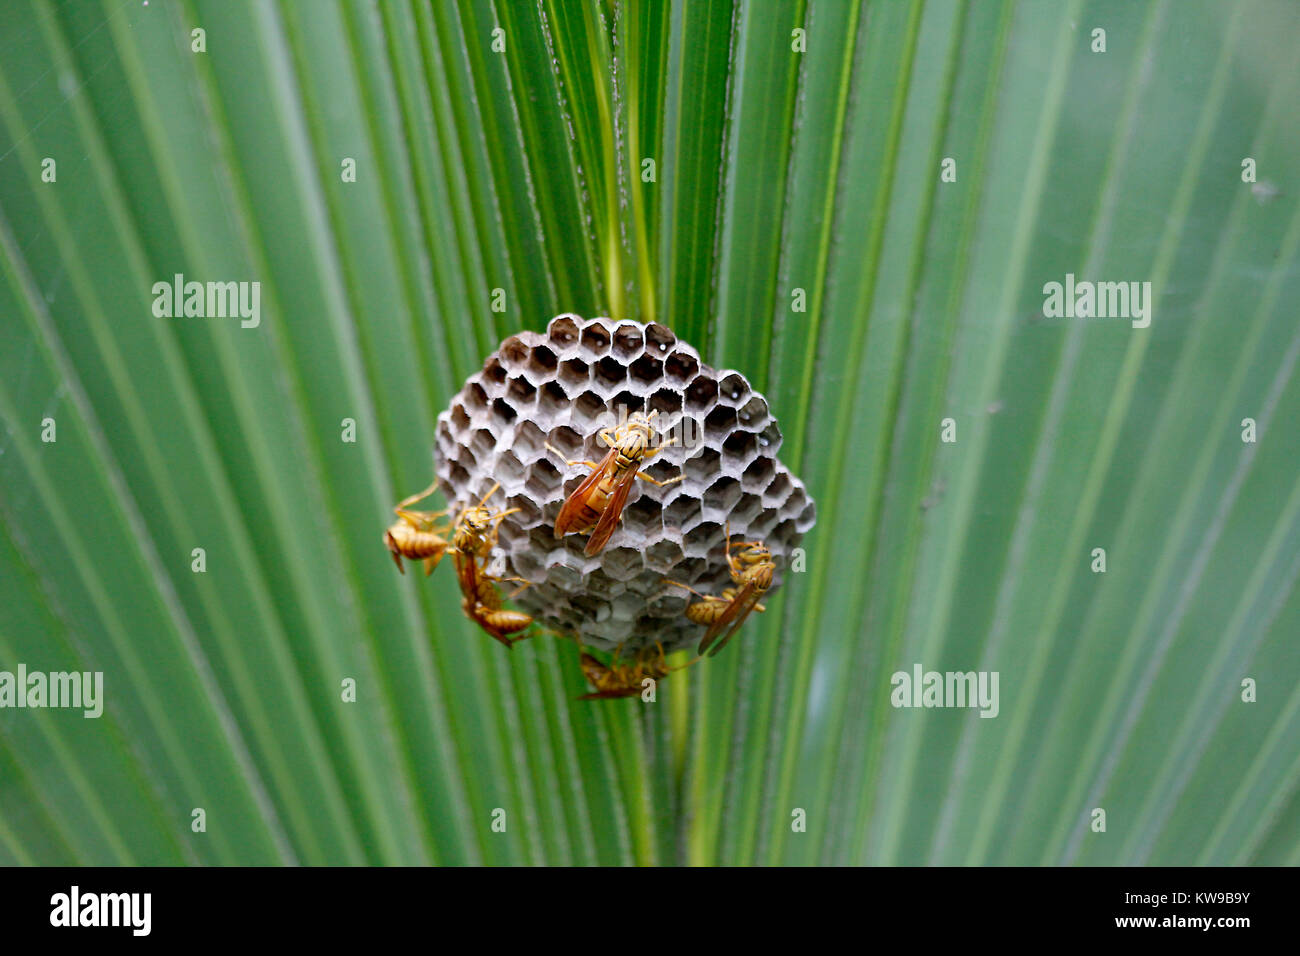 Hive of wasps - Bangladesh Stock Photo